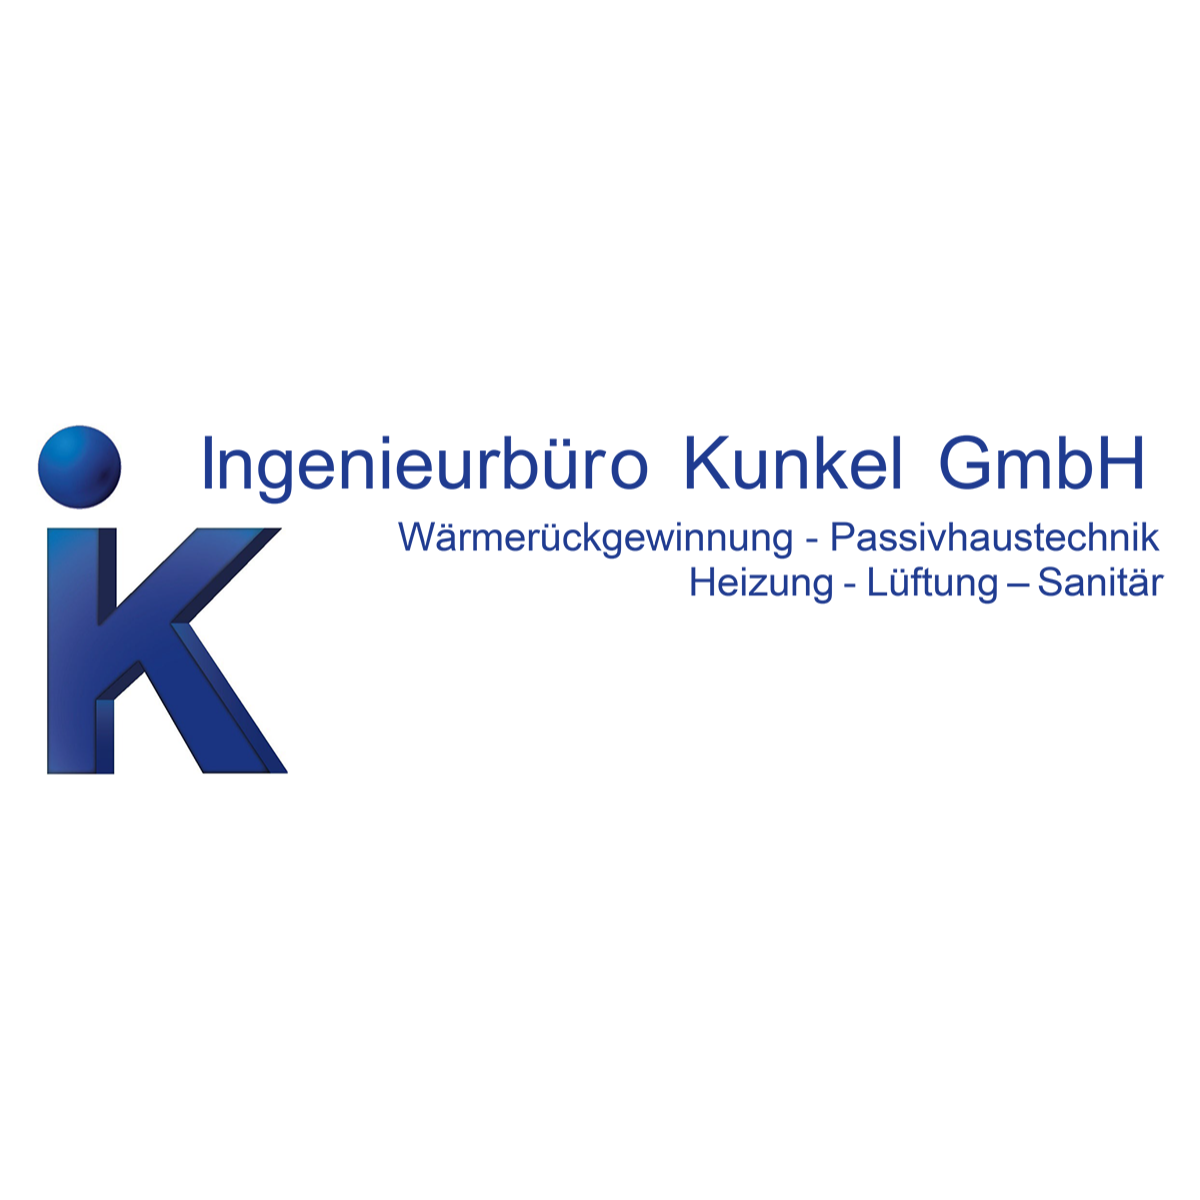 Ingenieurbüro Kunkel GmbH in Zwickau - Logo